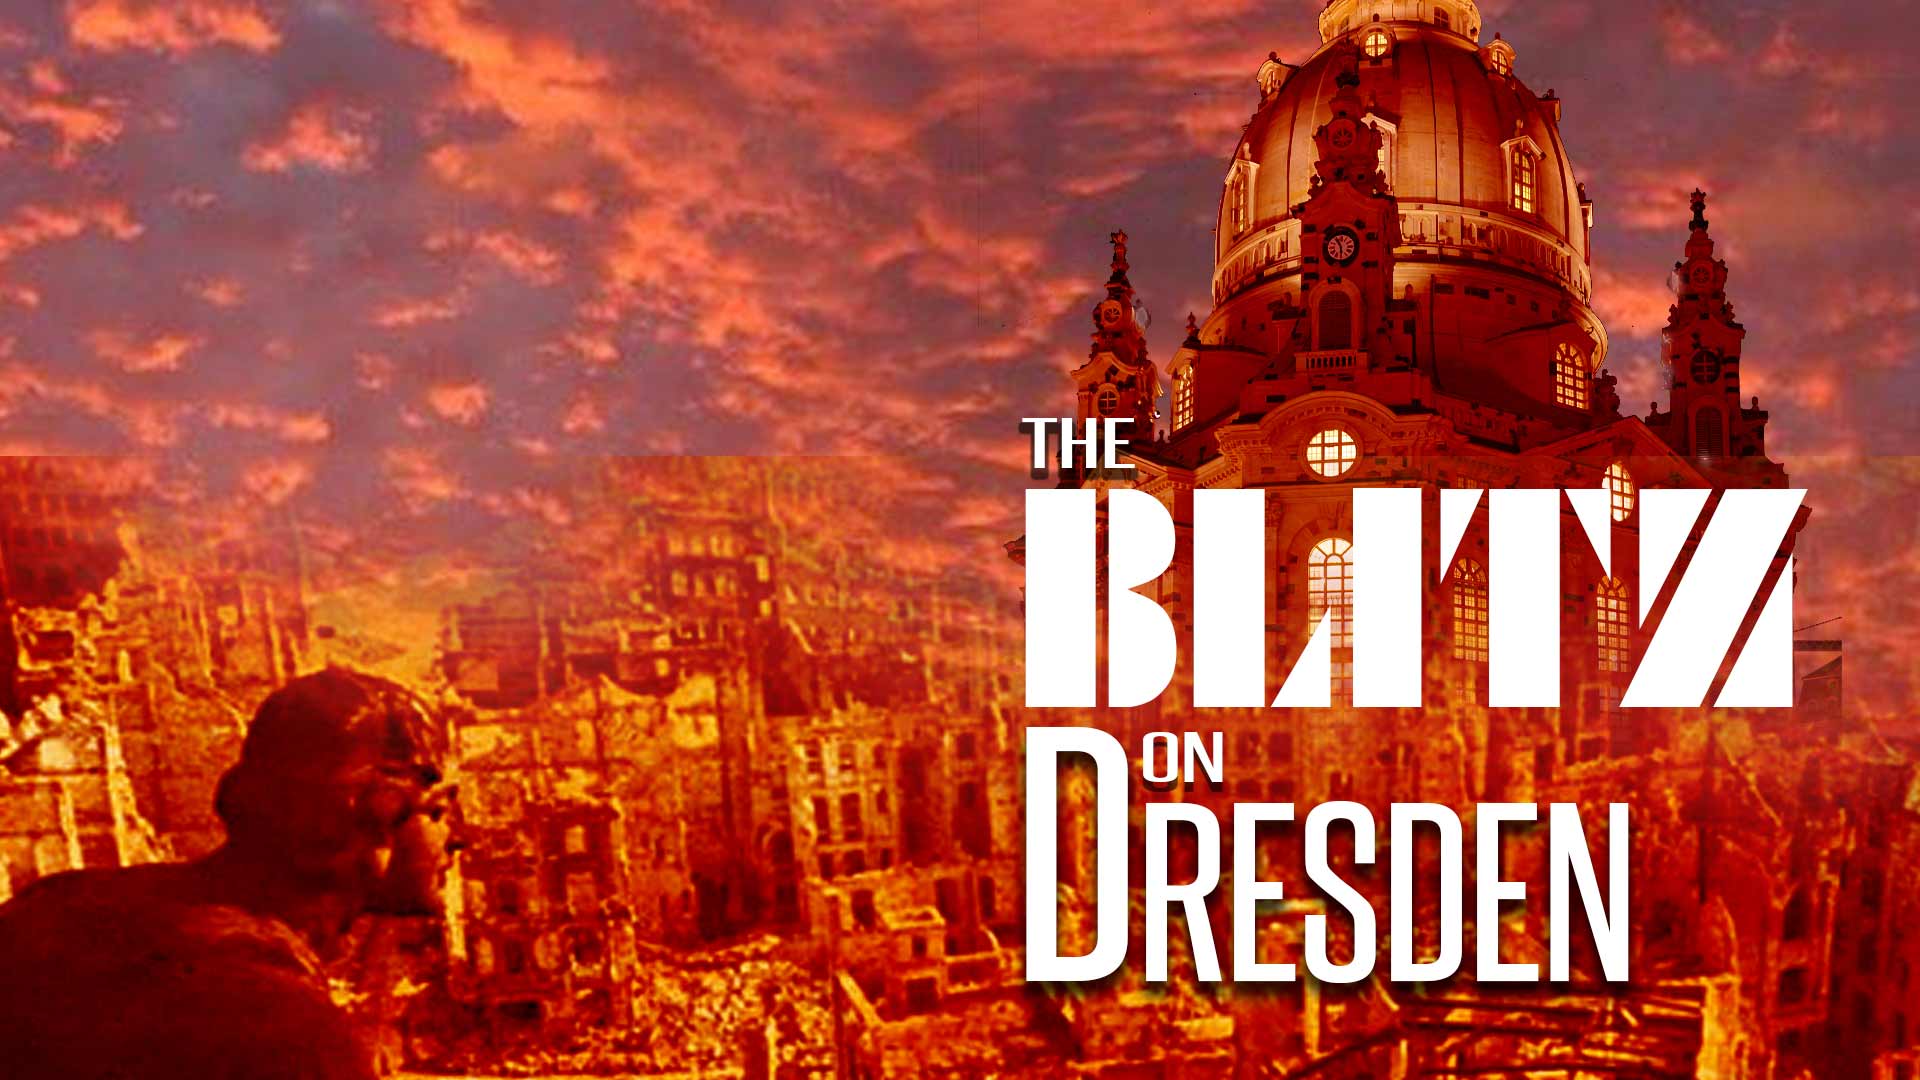 The Blitz on Dresden